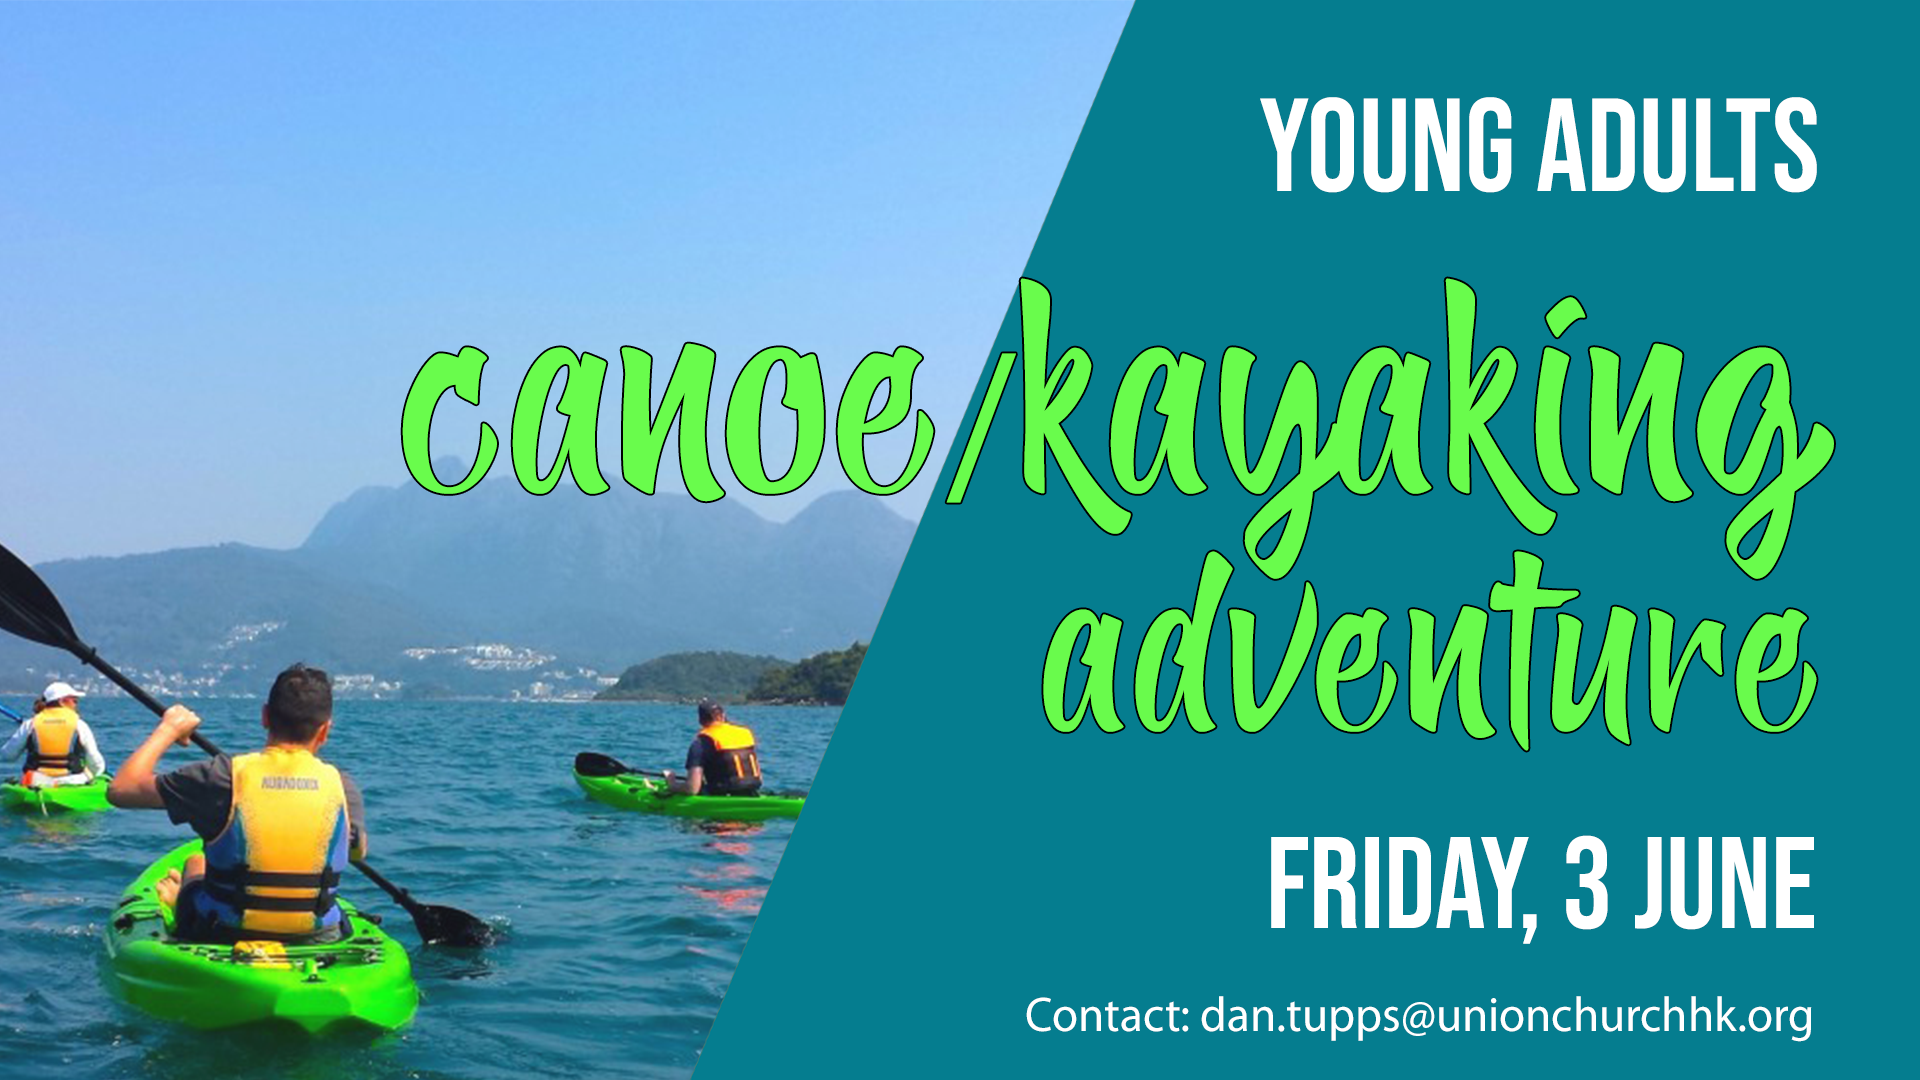 Canoe-Kayaking Adventure